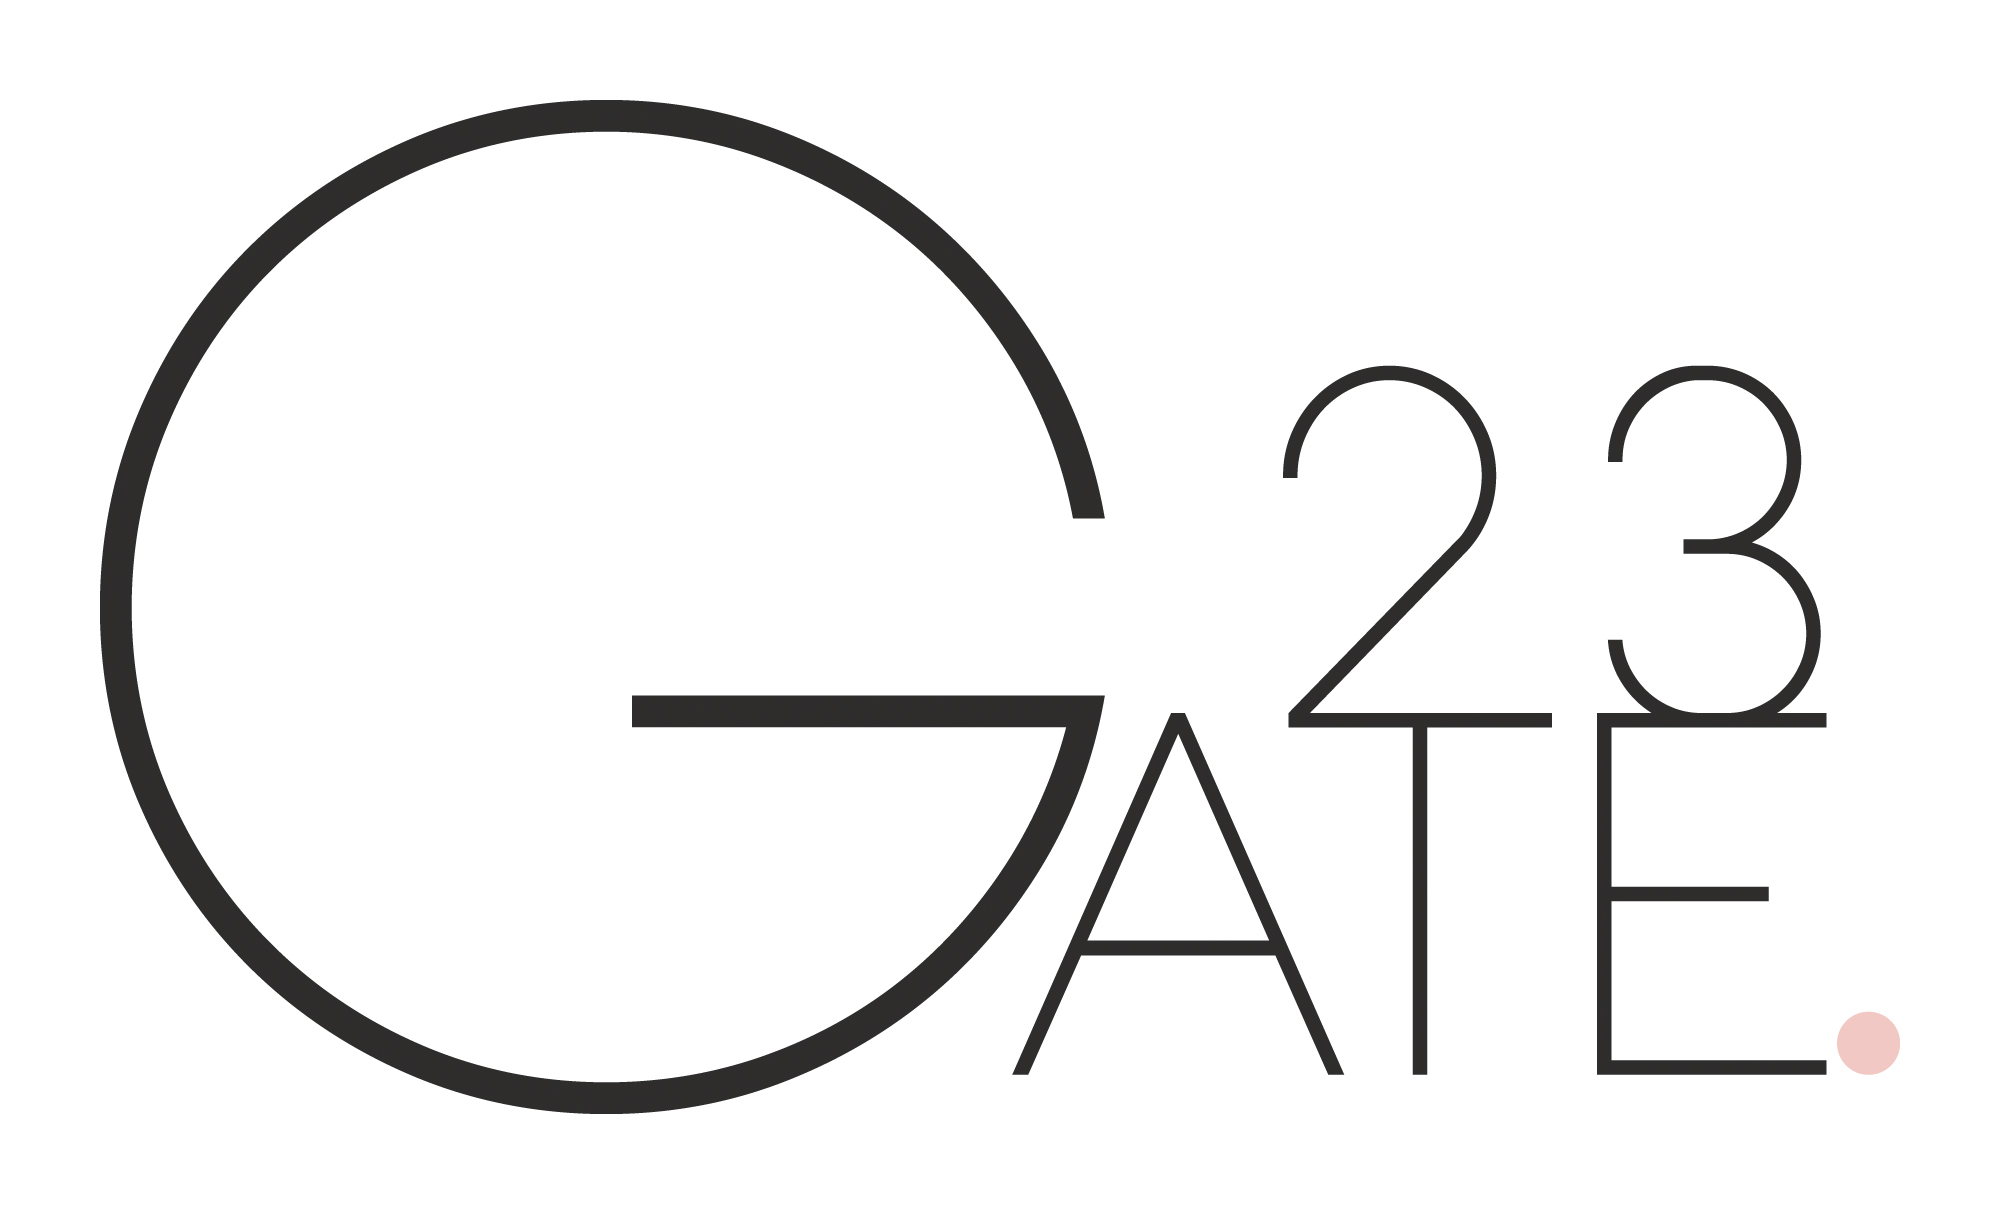 GATE23 Agentur